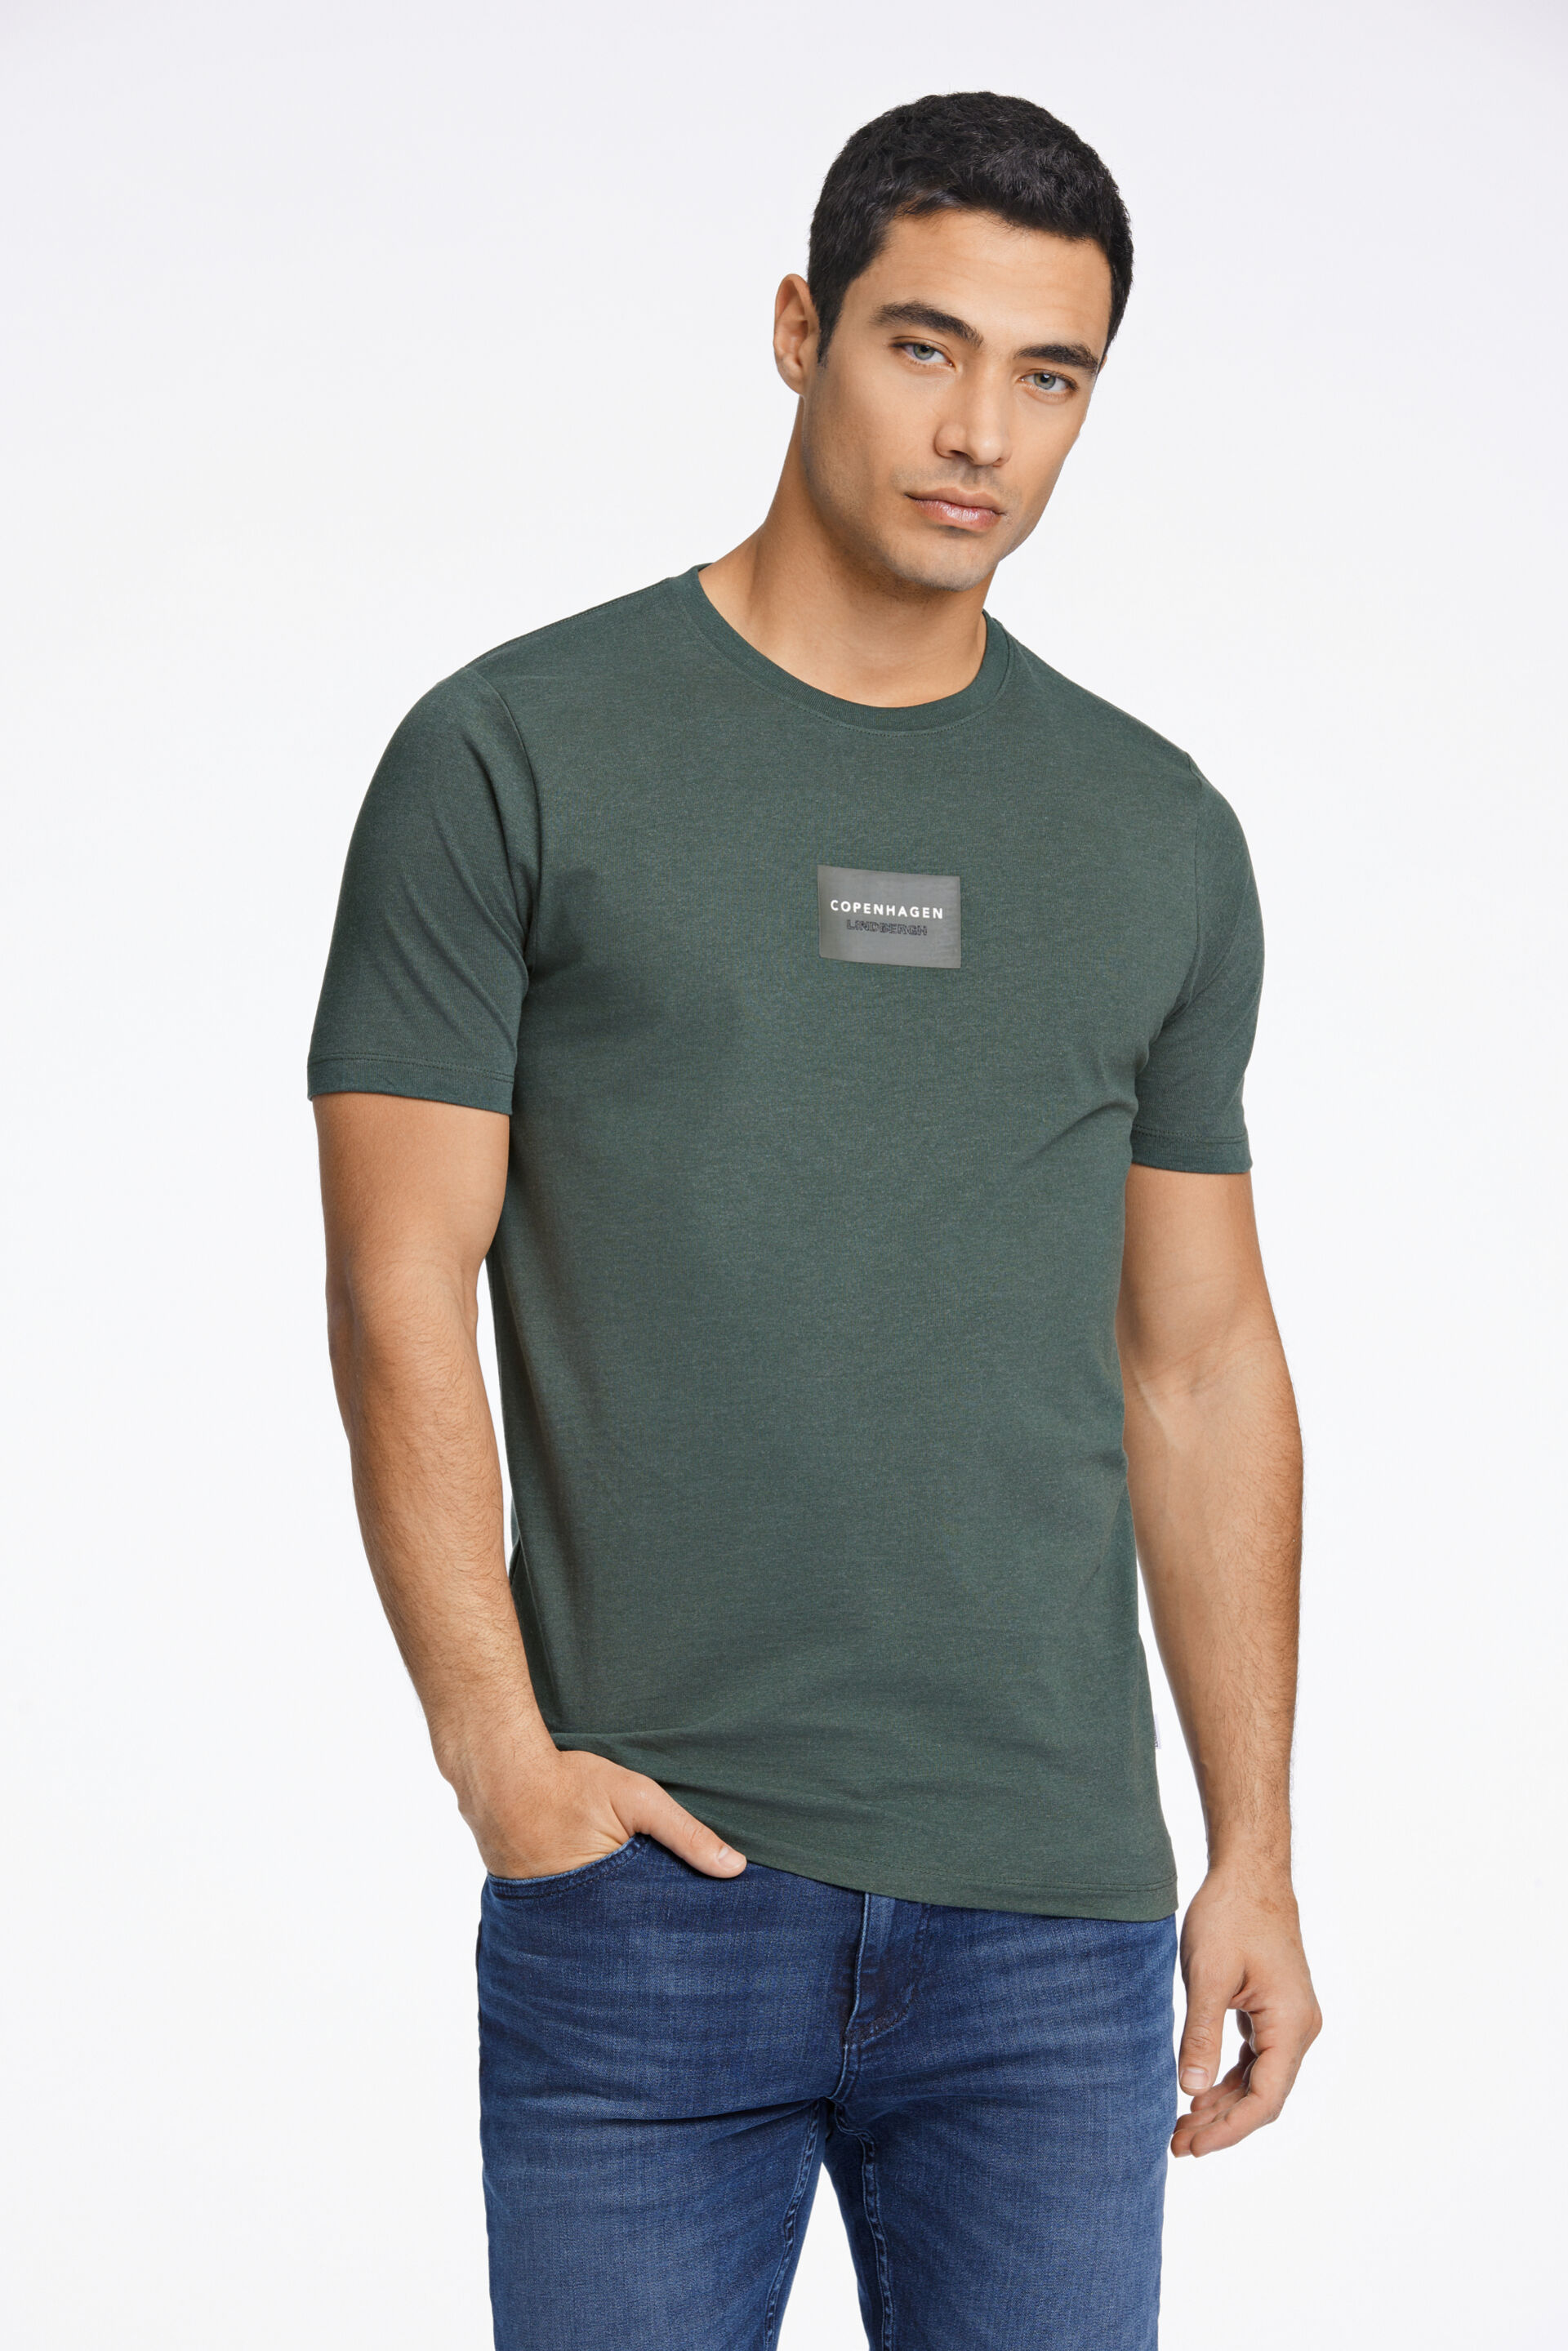 T-shirt T-shirt Grön 30-400015